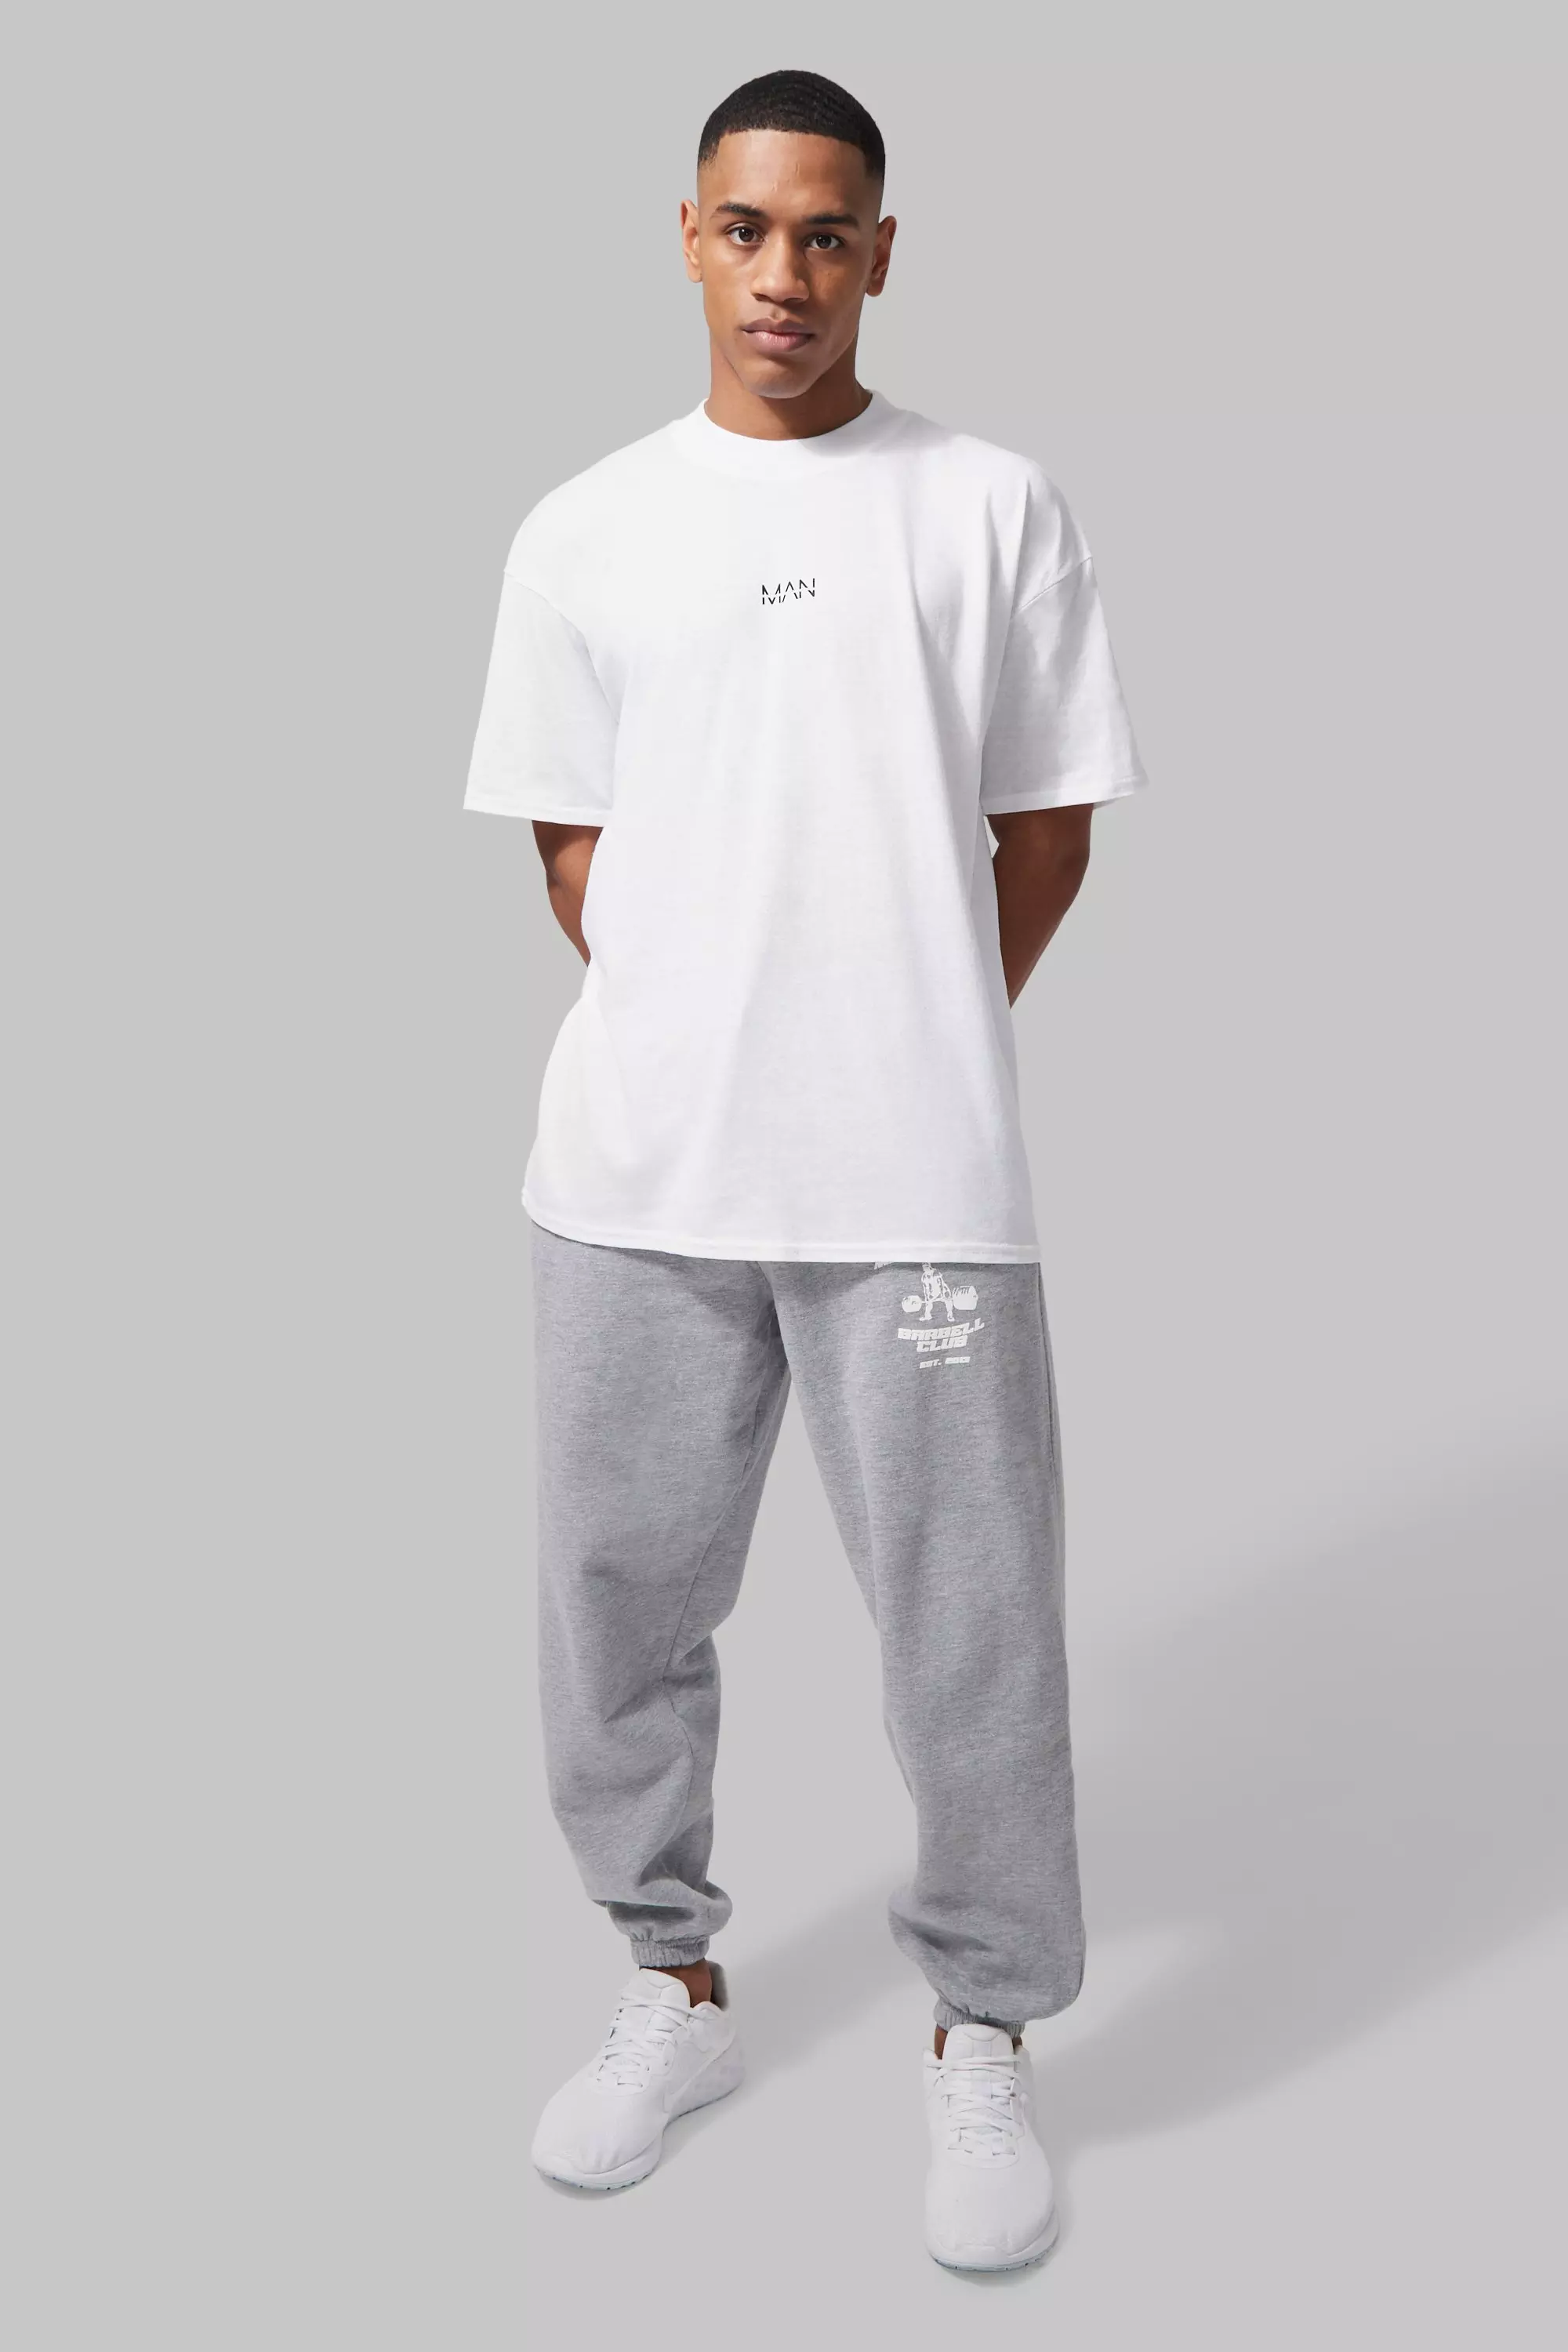 Nike Lounge essential fleece pants in grey marl